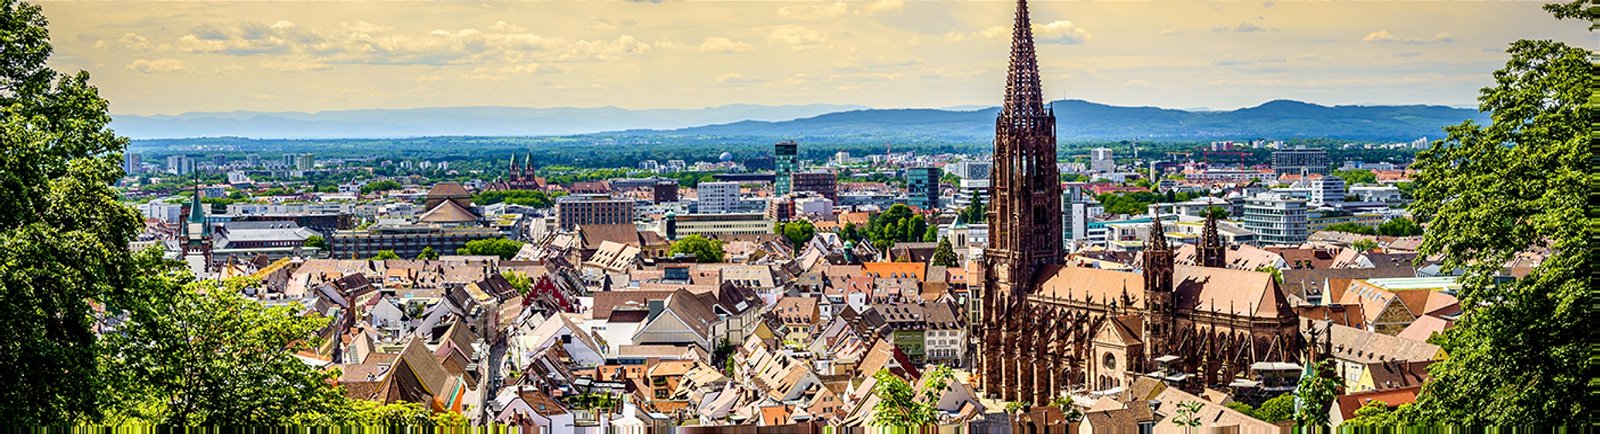 Städtereise nach Freiburg im Breisgau